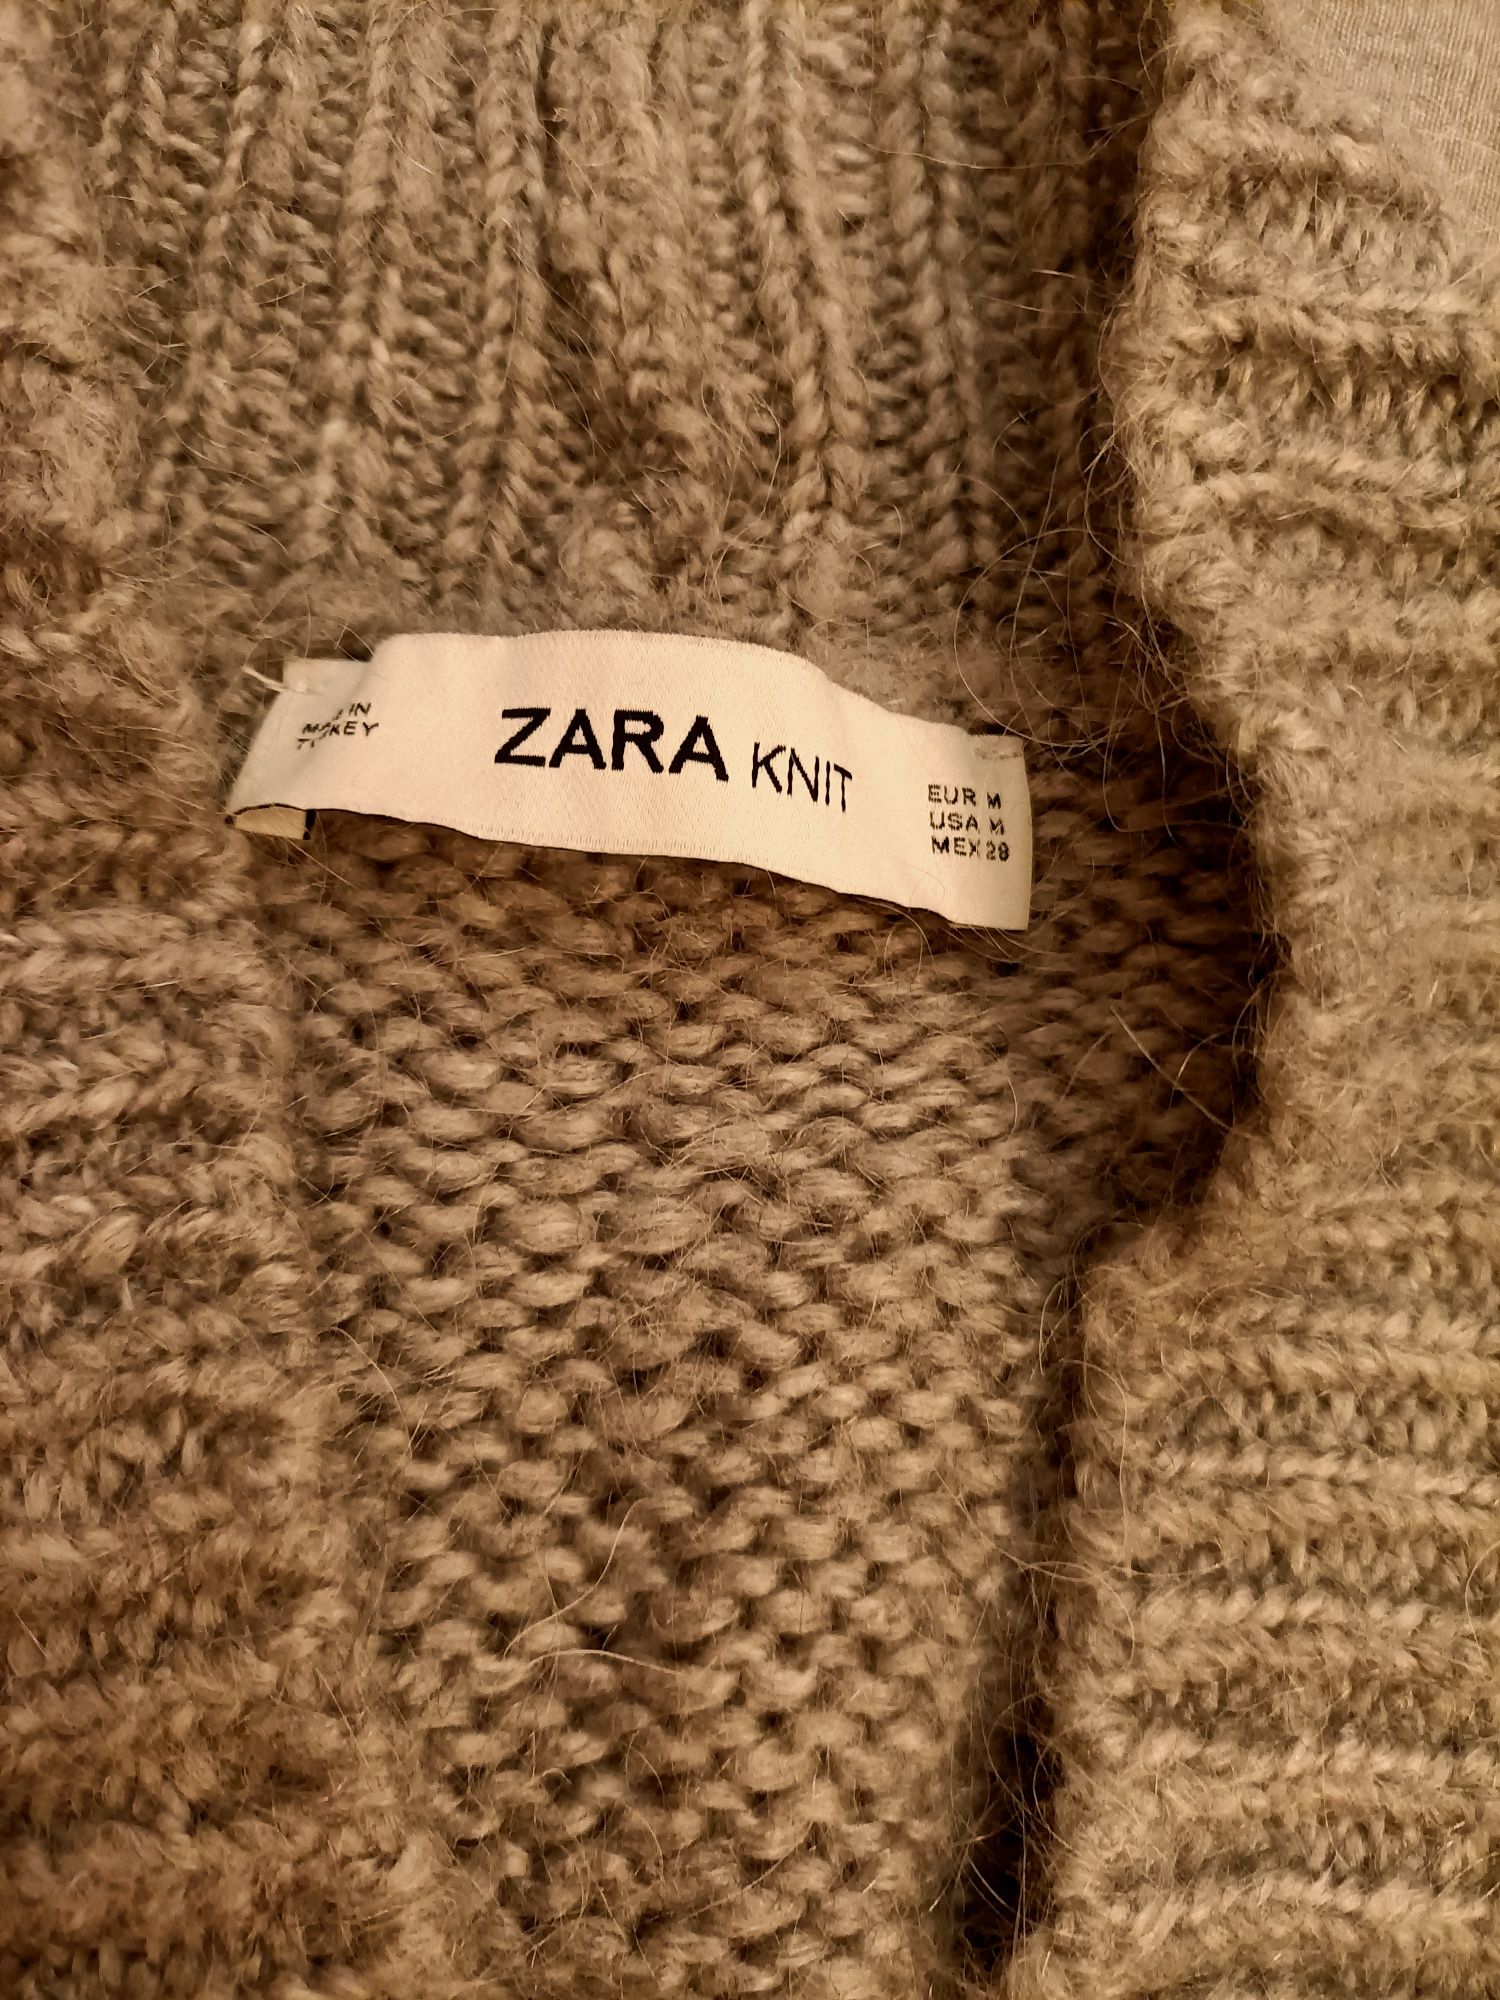 Sweter z Zary, długi, ładny.